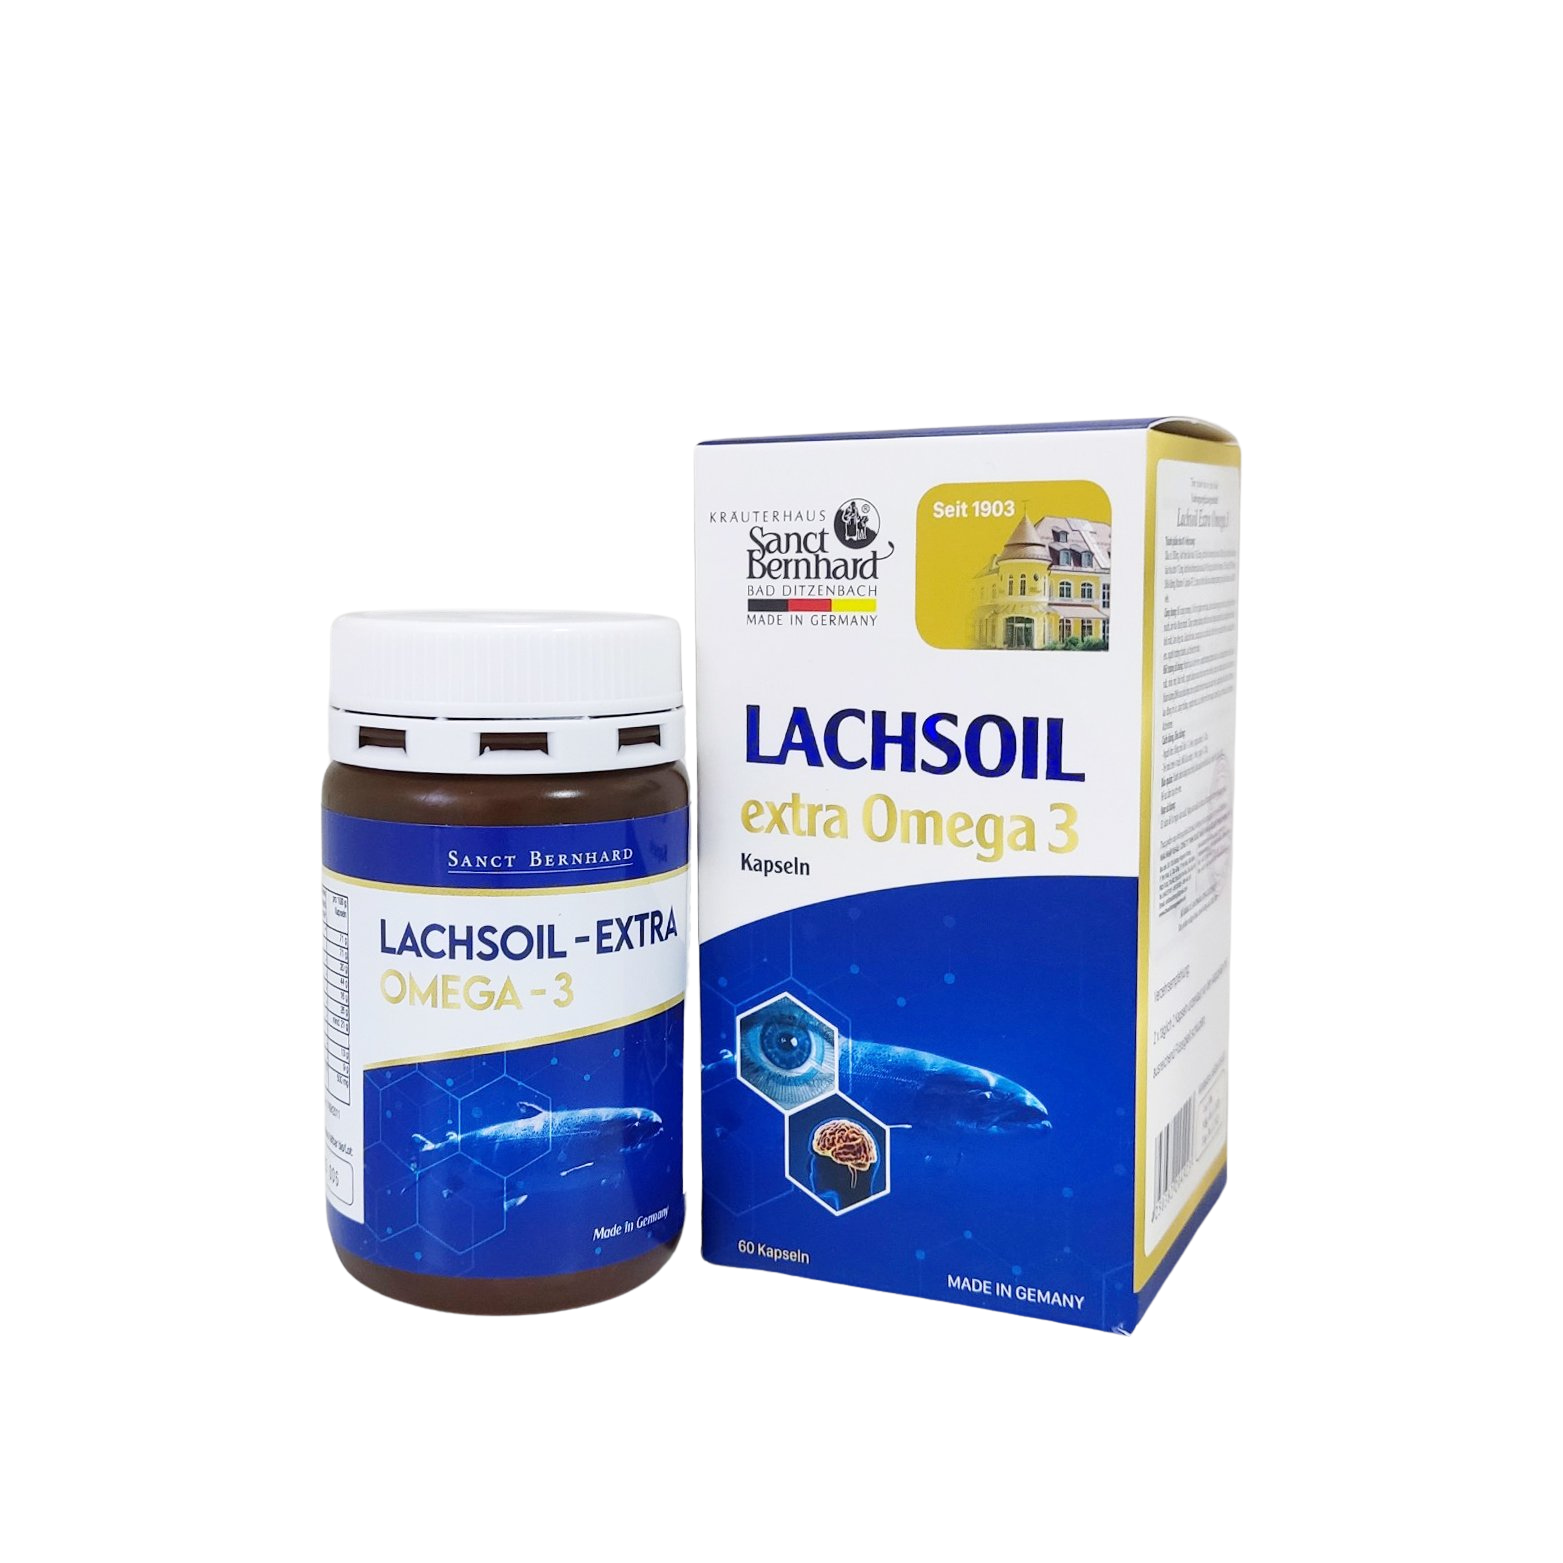 Lachsoil-extra Omega-3 (Hộp 60 viên)